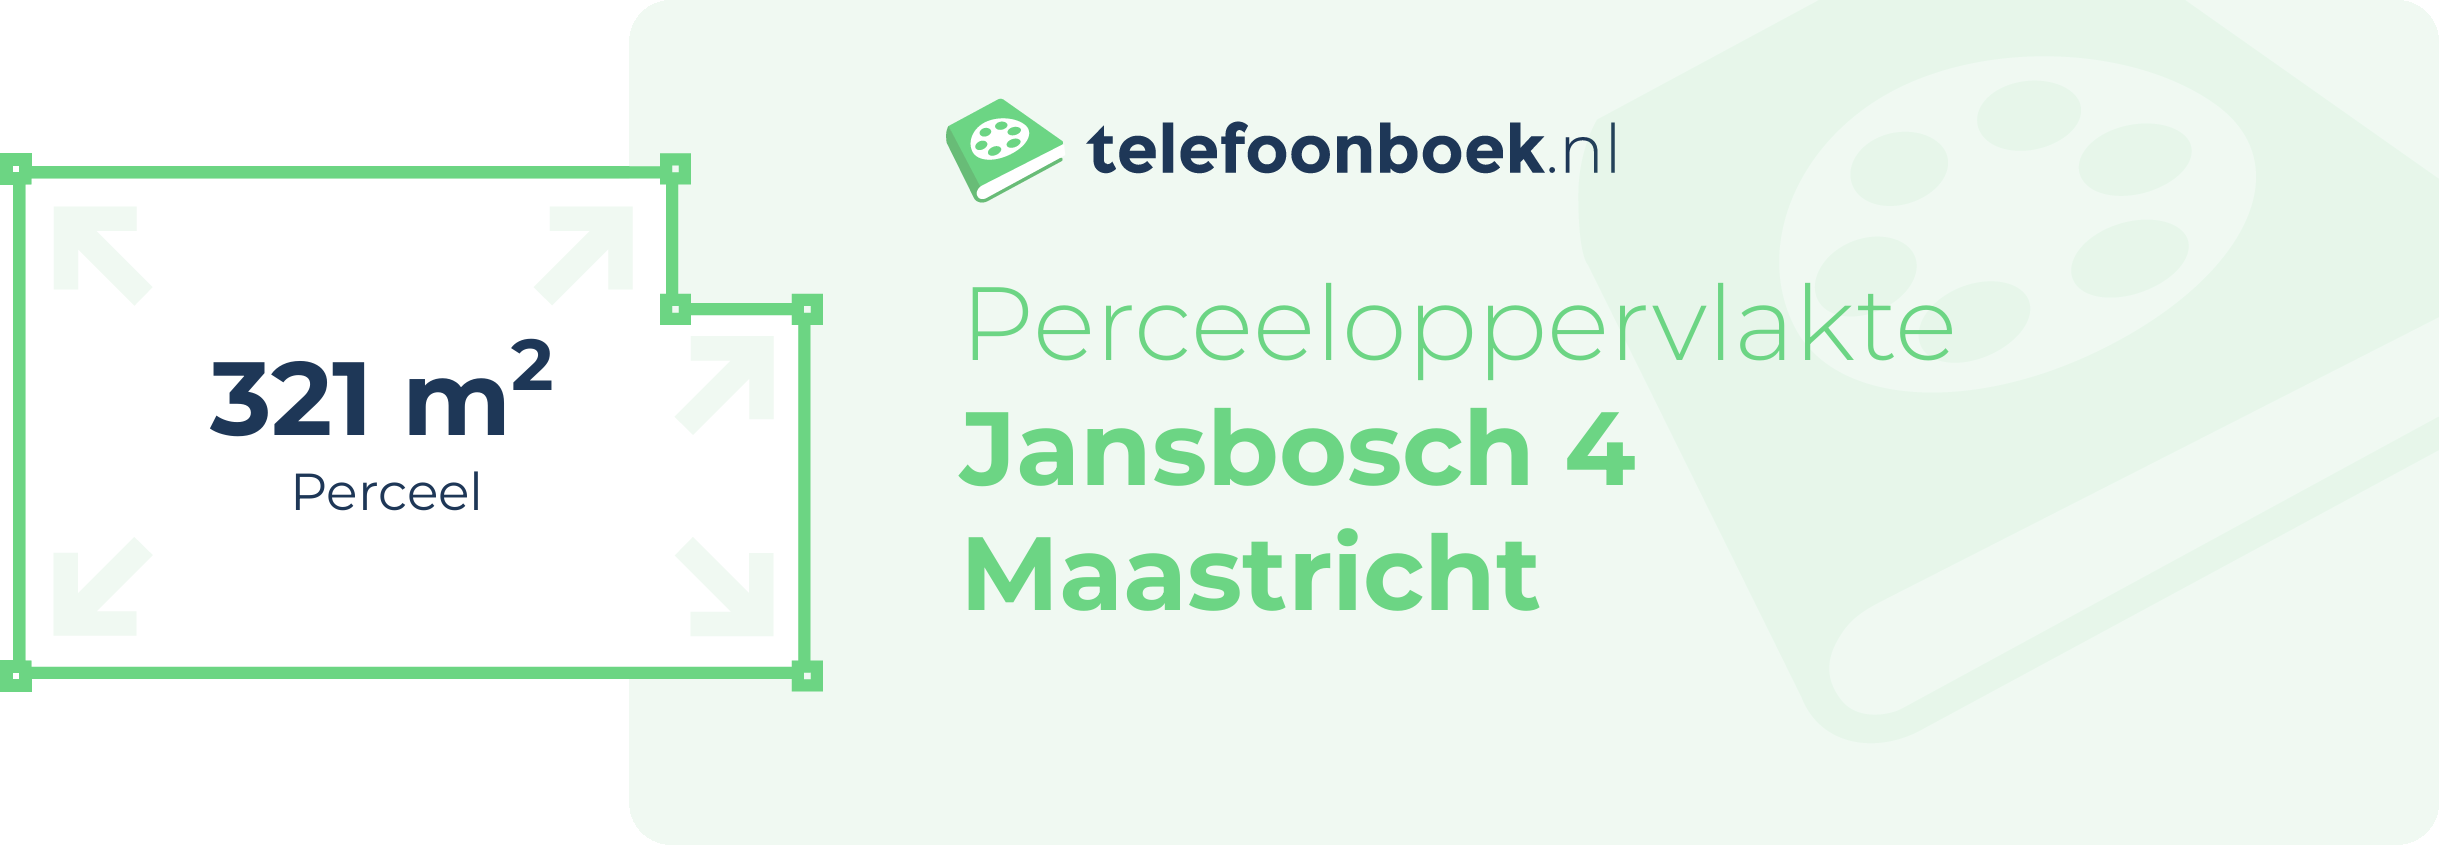 Perceeloppervlakte Jansbosch 4 Maastricht